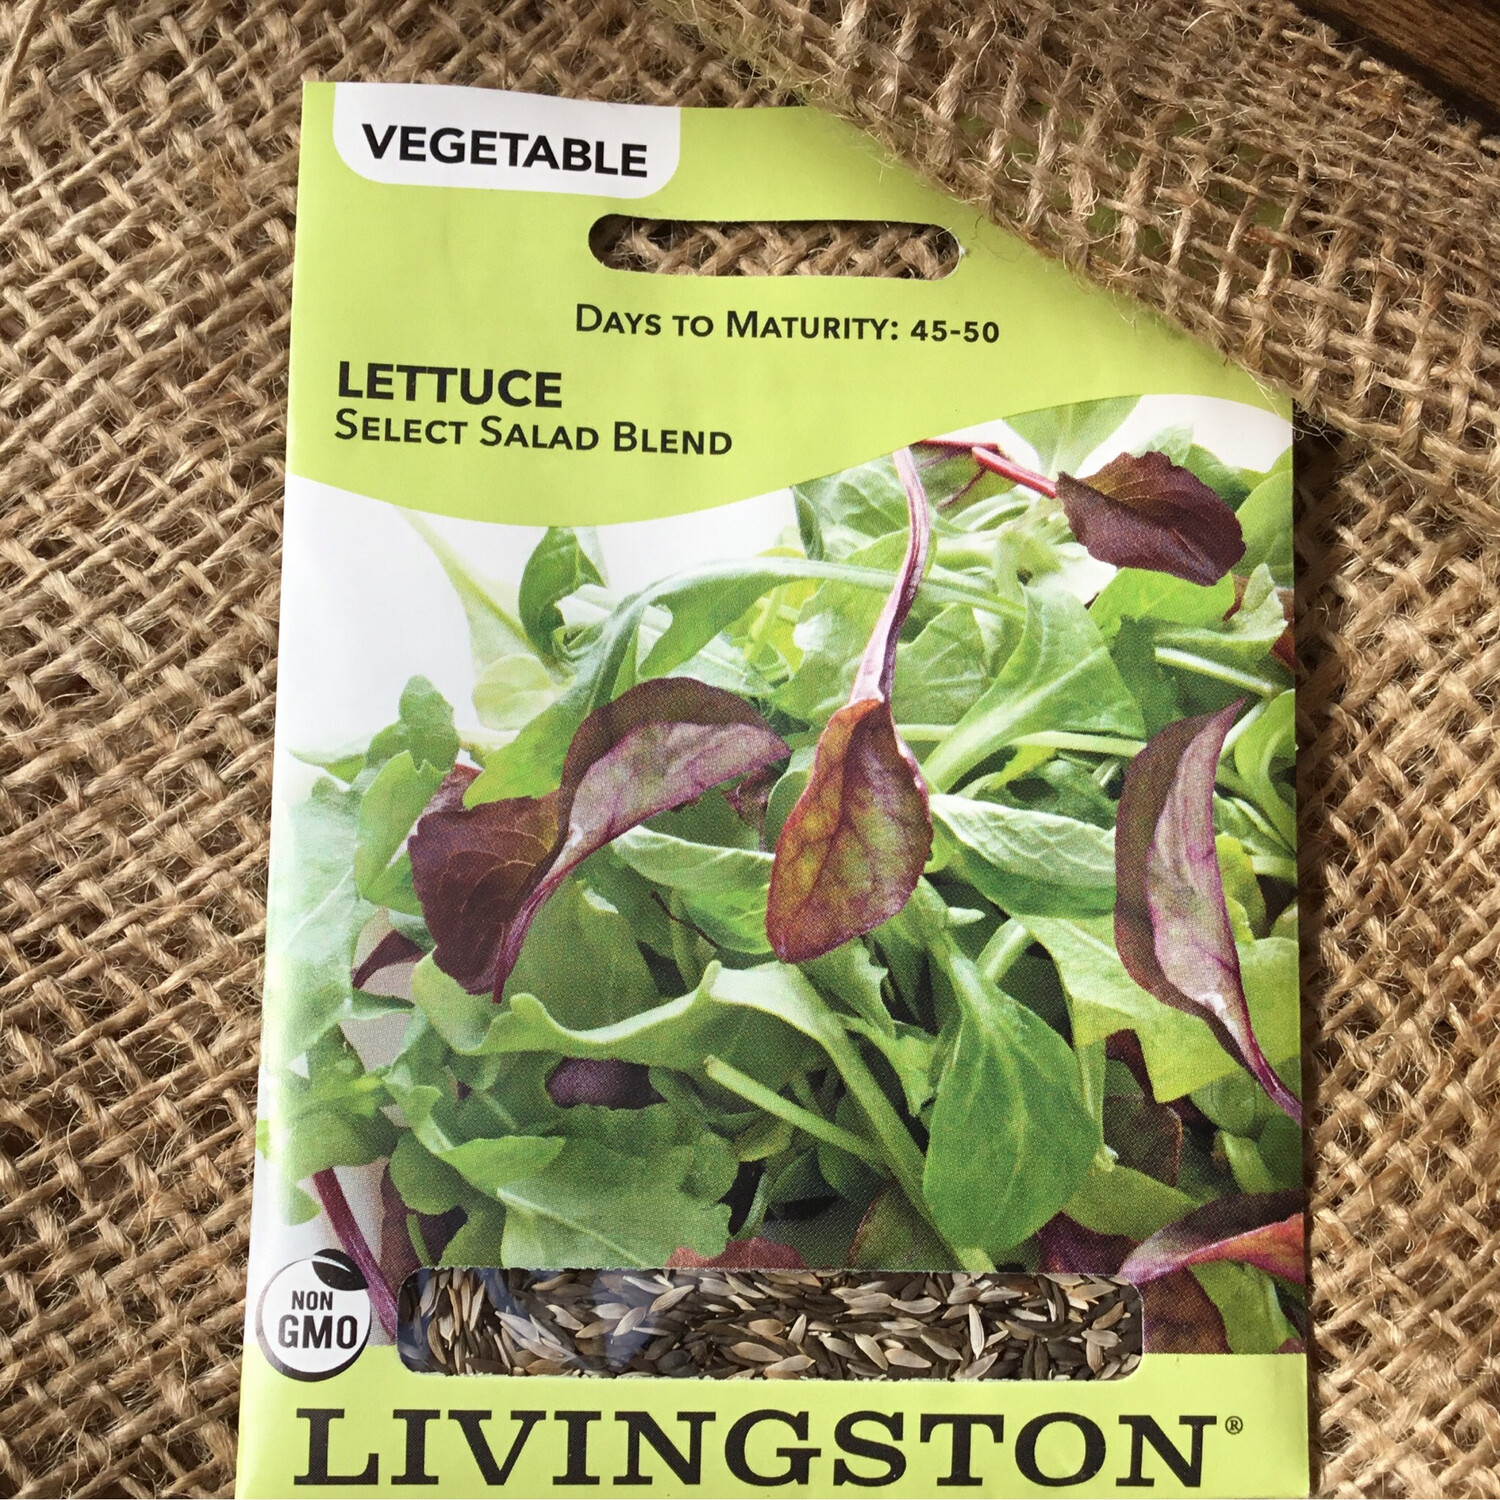 (Seed) Lettuce Select Salad Blend $2.99